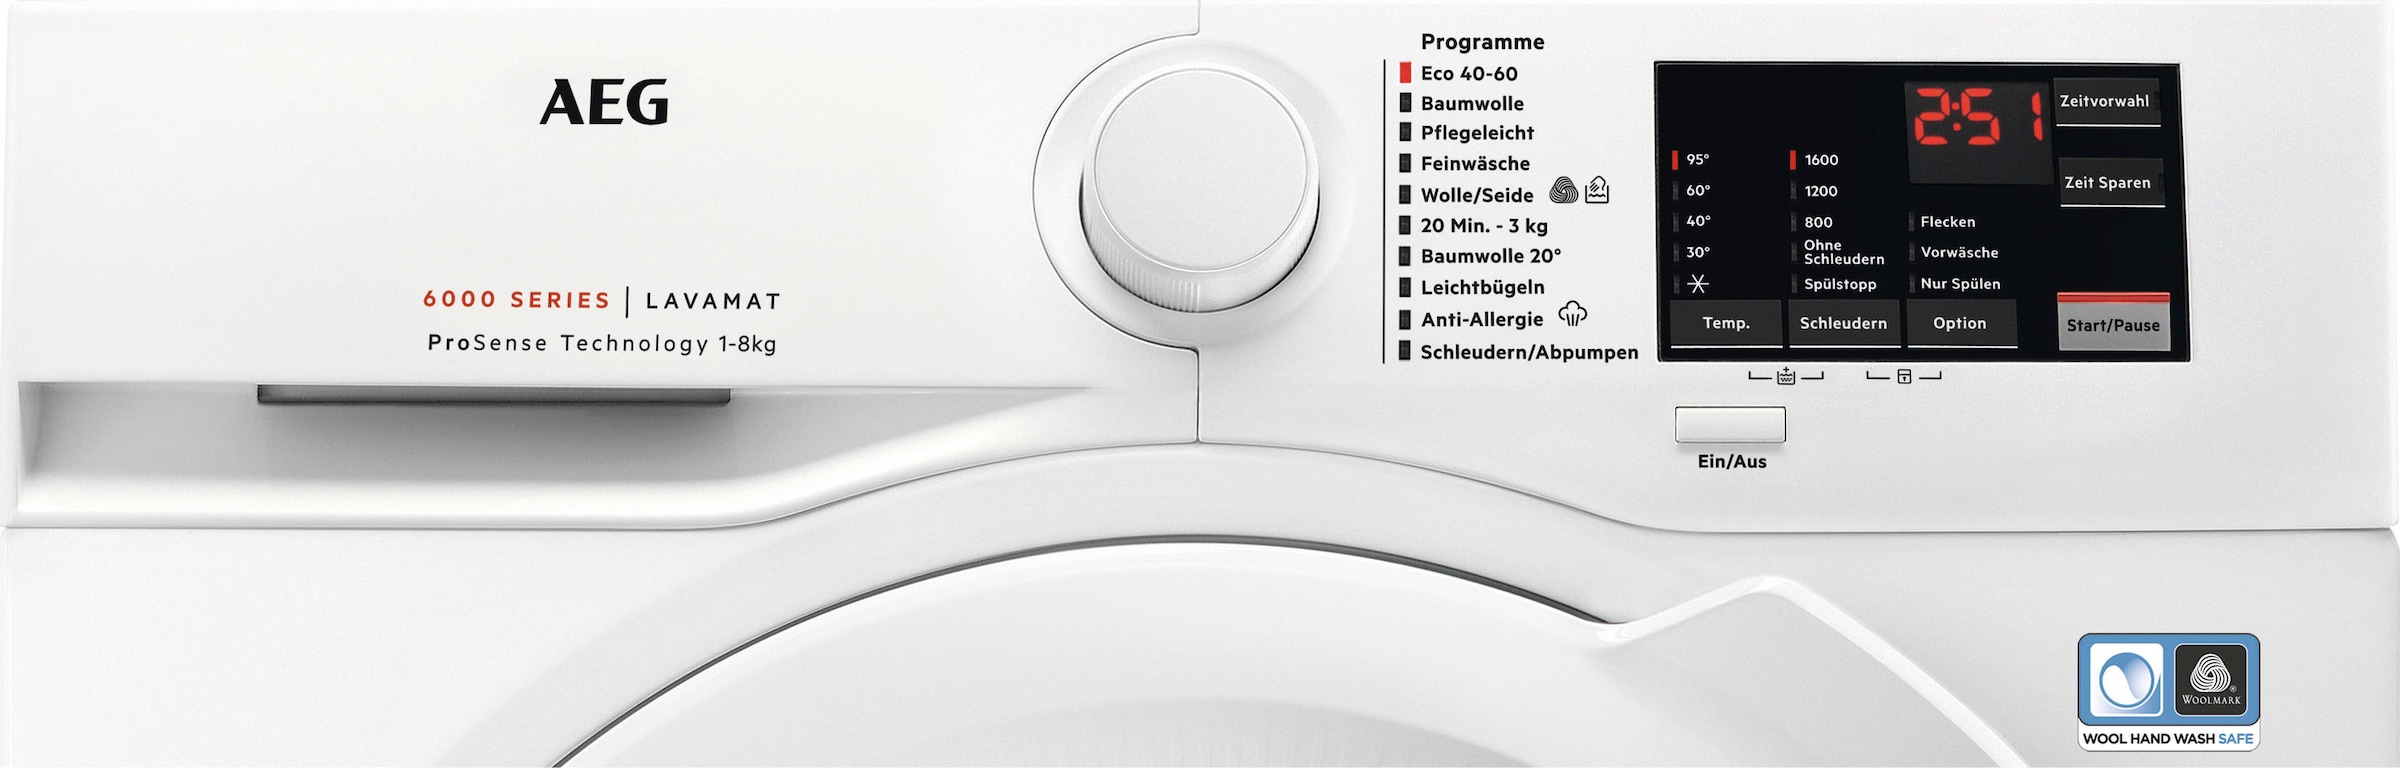 AEG Waschmaschine Anti-Allergie Jahren »L6FA68FL«, 8 mit Dampf Garantie Programm Hygiene-/ U/min, Serie L6FA68FL, 6000 mit kg, ProSense-Technologie, XXL mit 1600 3